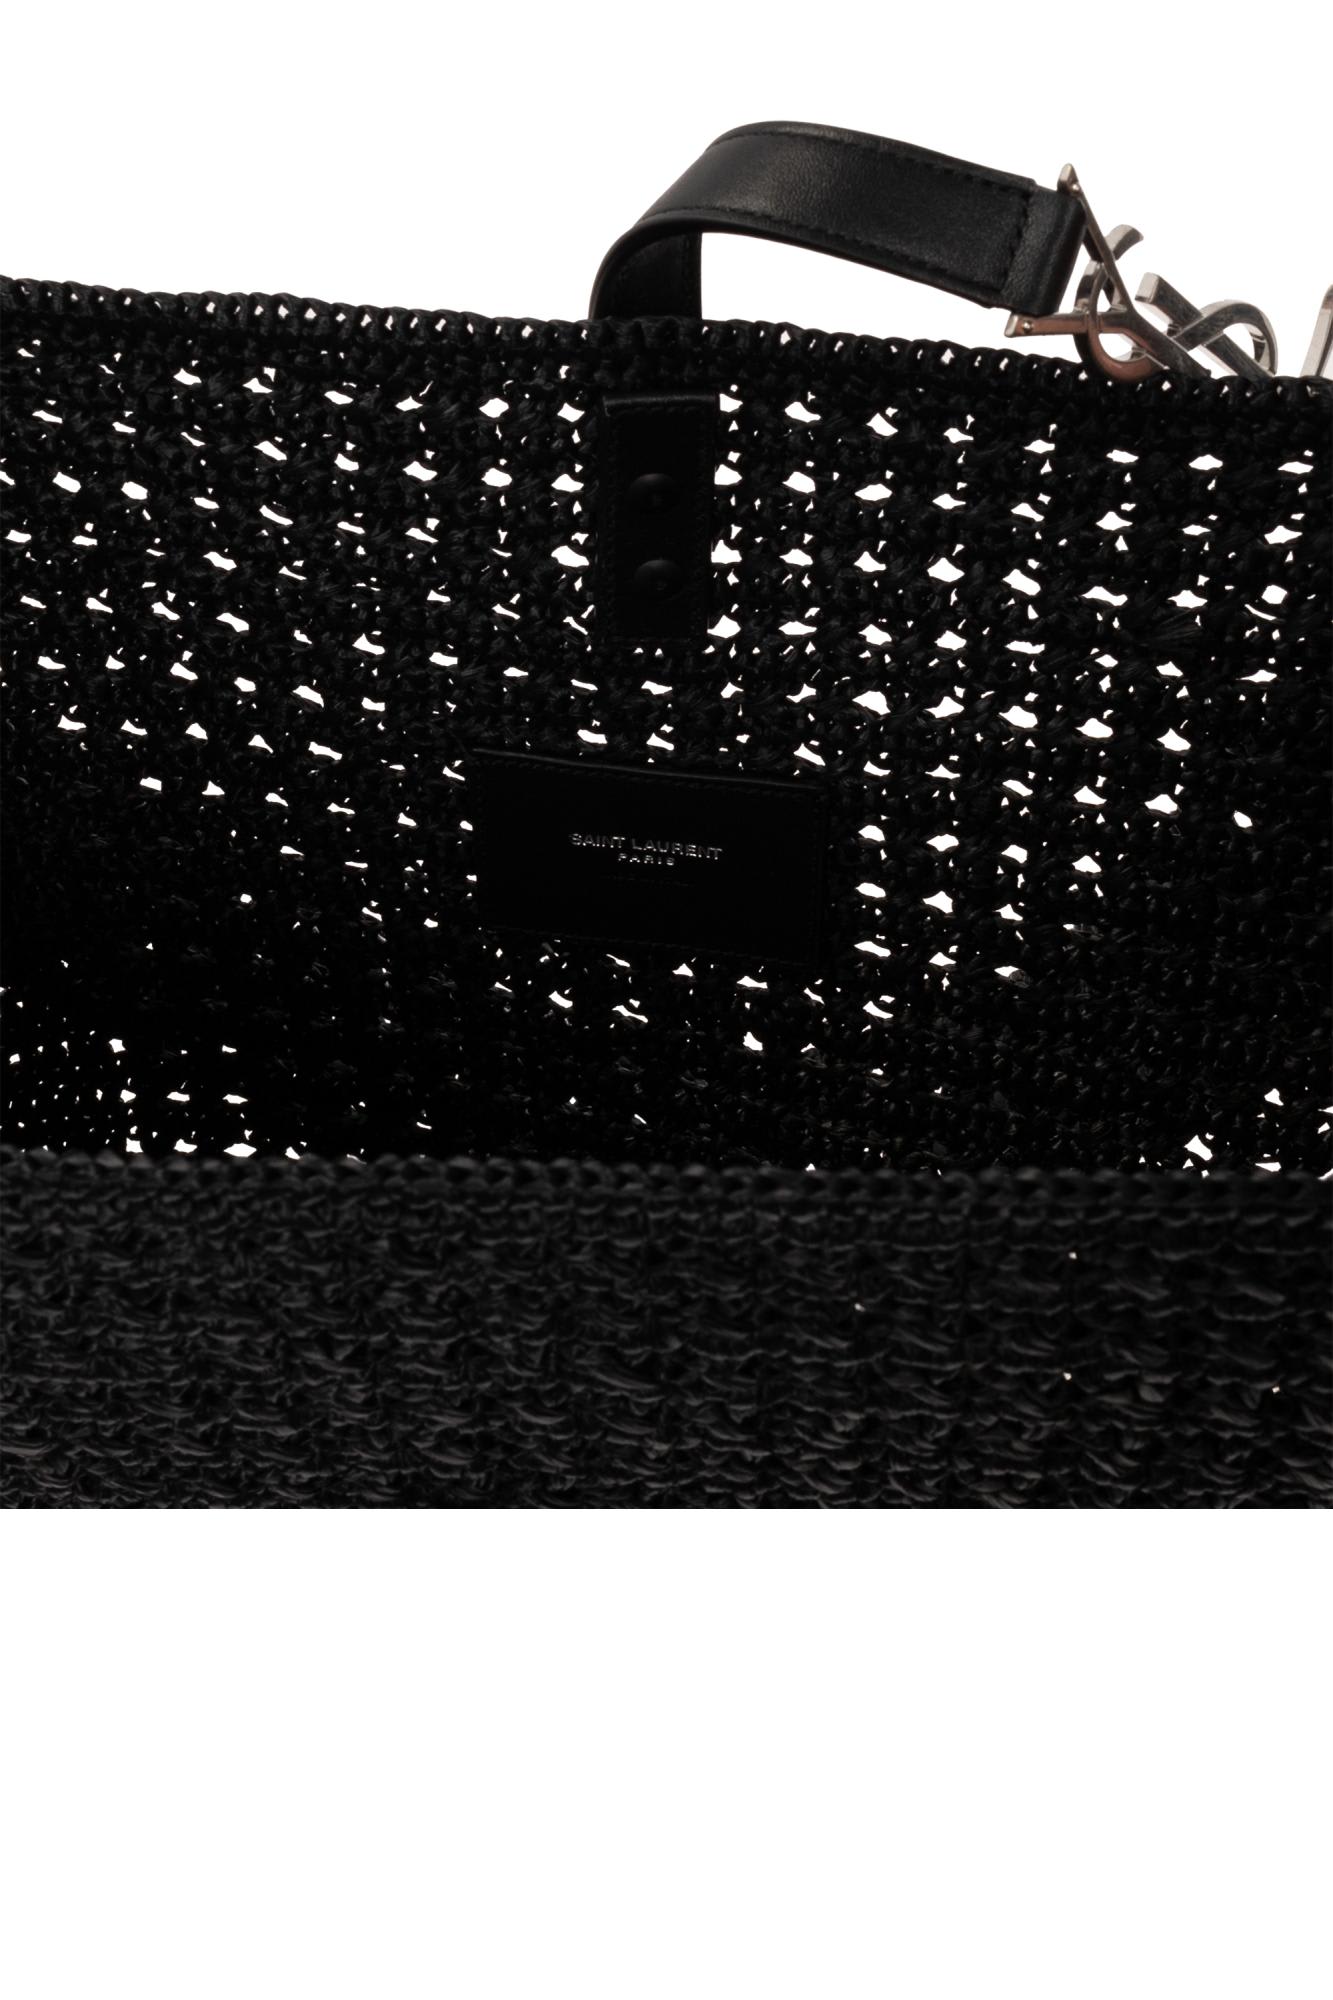 Shop Saint Laurent Le 5 A 7 Medium Shopper Bag In Black